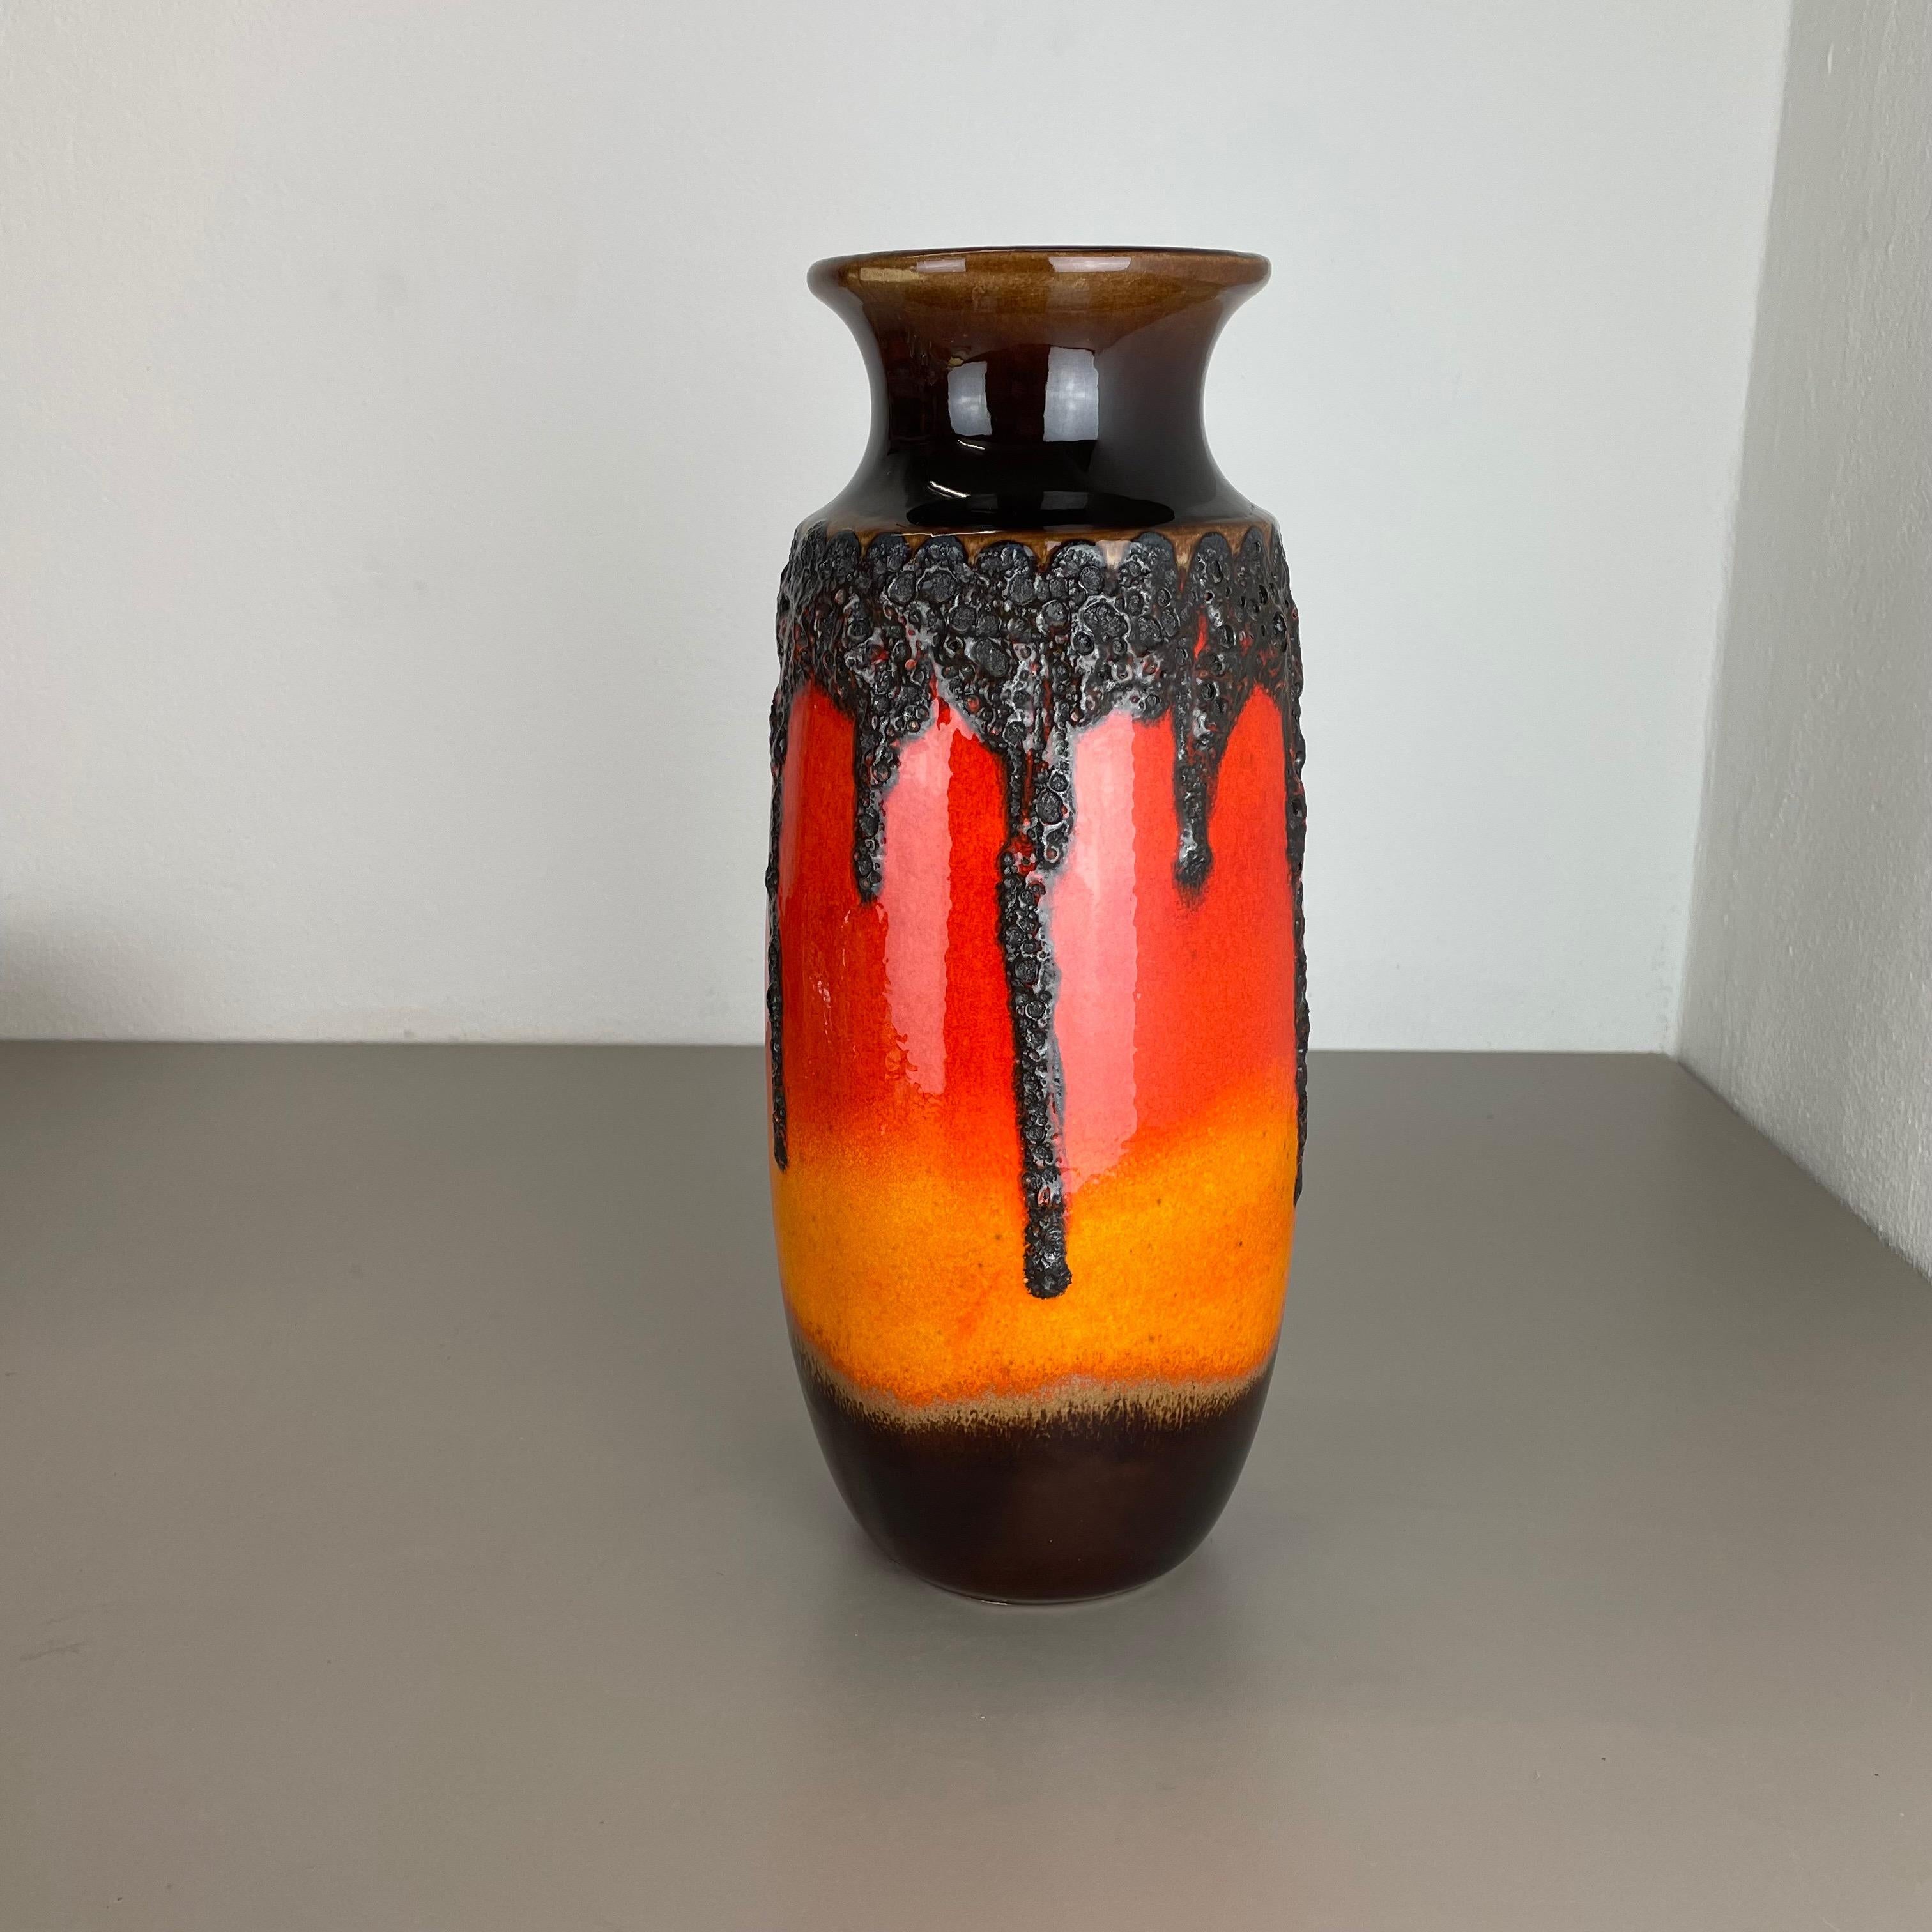 Artikel:

Fette Lavakunstvase, schwere brutalistische Glasur


Produzent:

Scheurich, Deutschland



Jahrzehnt:

1970s




Diese originelle Vintage-Vase wurde in den 1970er Jahren in Deutschland hergestellt. Sie ist aus Keramik in fetter Lava-Optik